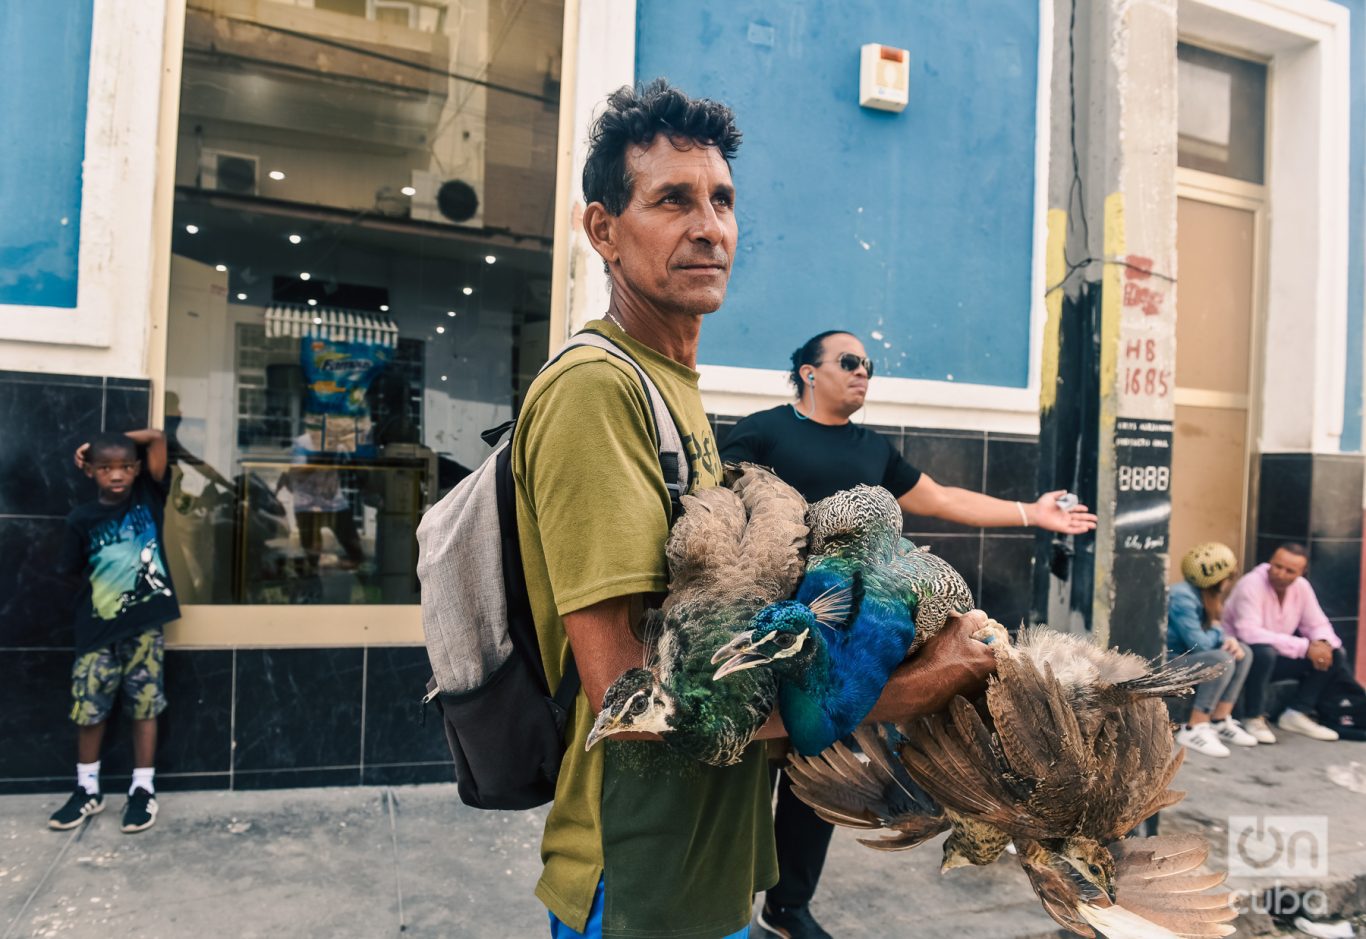 Pasaba entre la gente vendiendo pavos y gallinas. Al fondo, como en una escena a lo Cartier-Bresson, otros personajes de la escena. Foto: Kaloian.